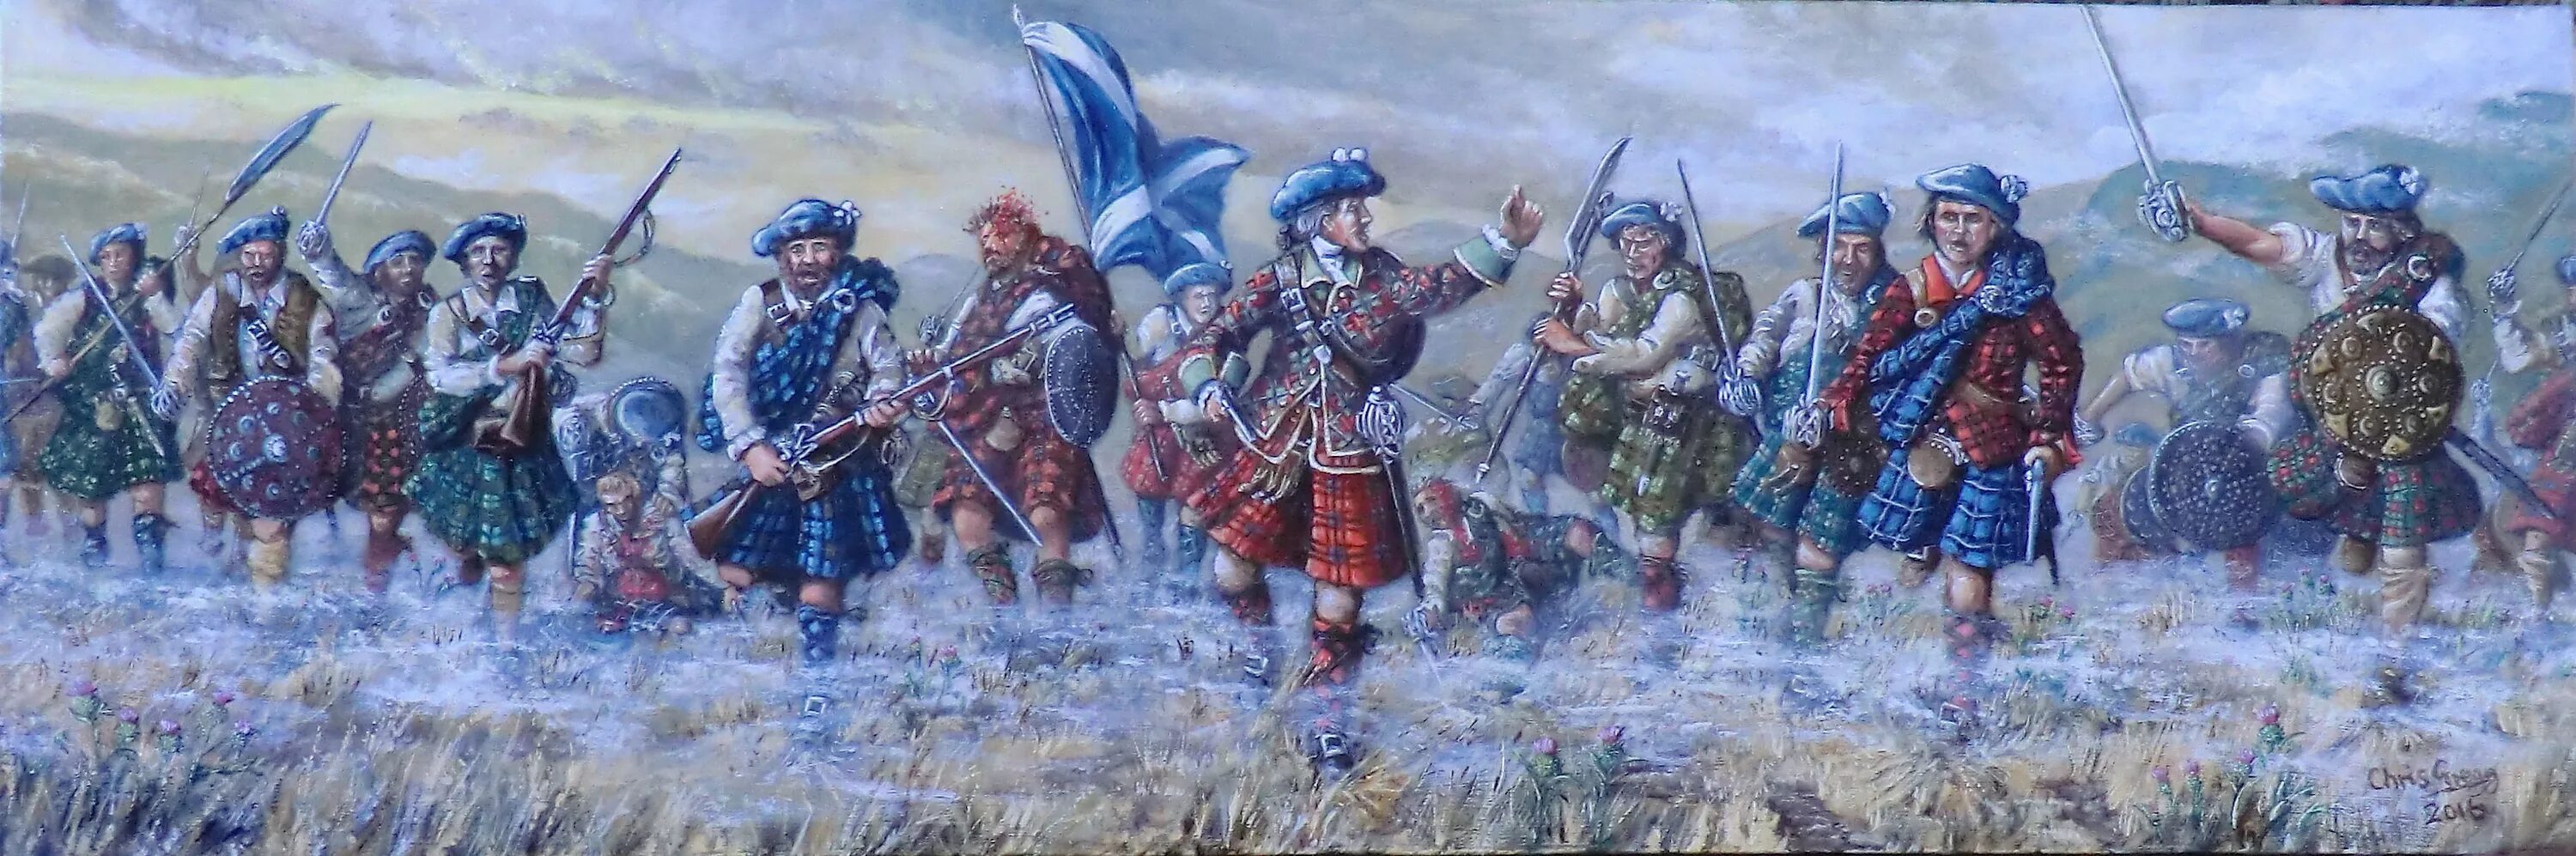 Читать романы про викингов шотландцев. Армия якобитов в Шотландии 1745. Восстание якобитов в Шотландии. Шотландские воины Якобиты. Битва при Каллодене.